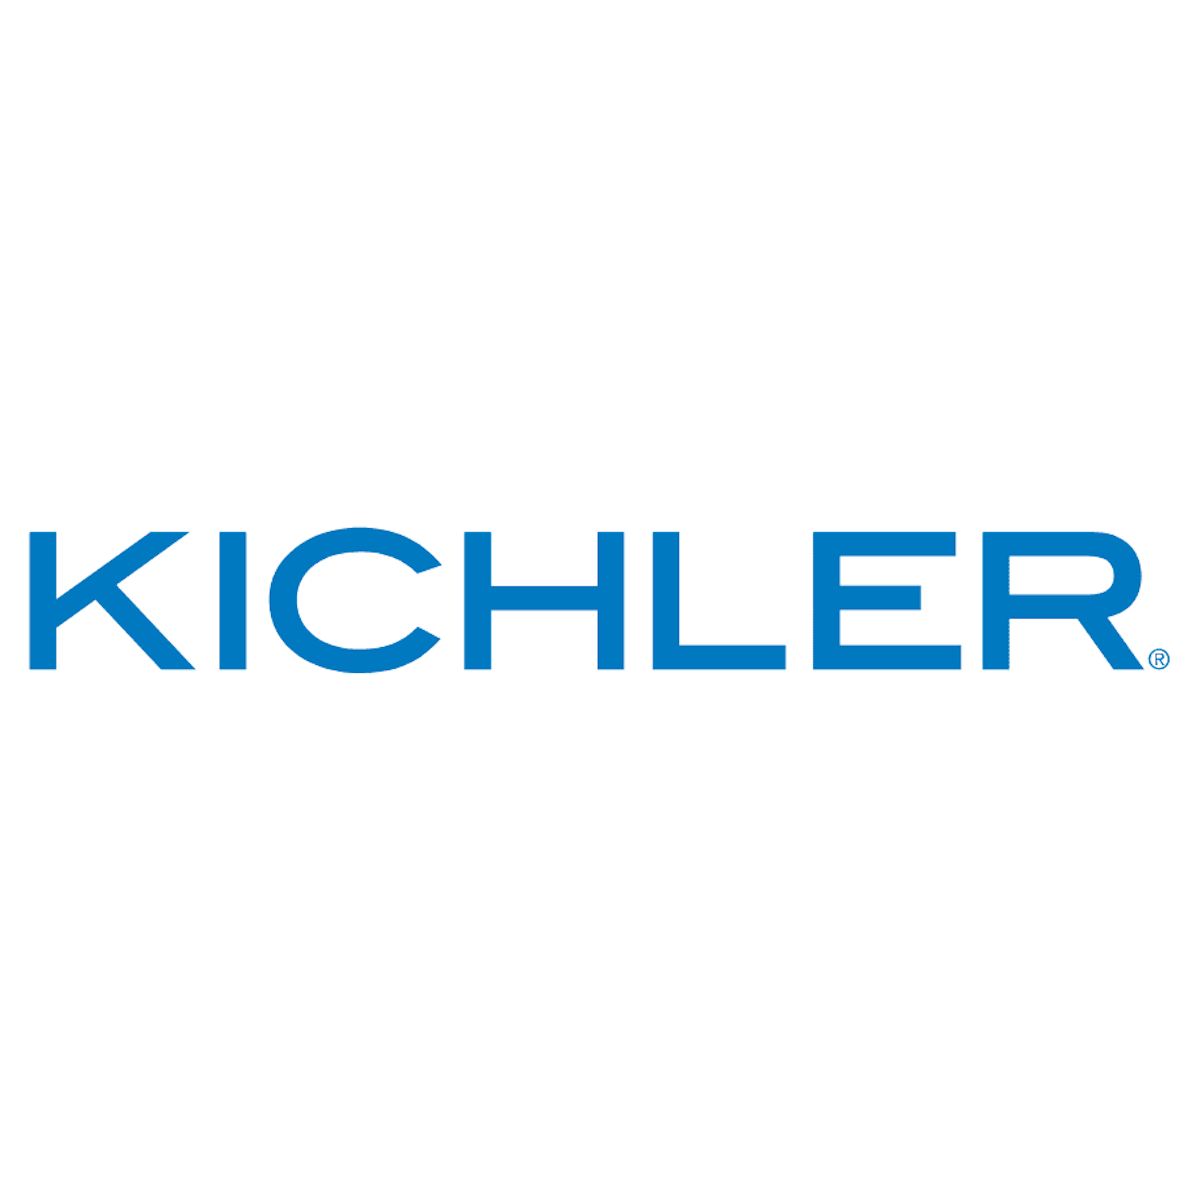 Image credit: Logo courtesy of Kichler Lighting.